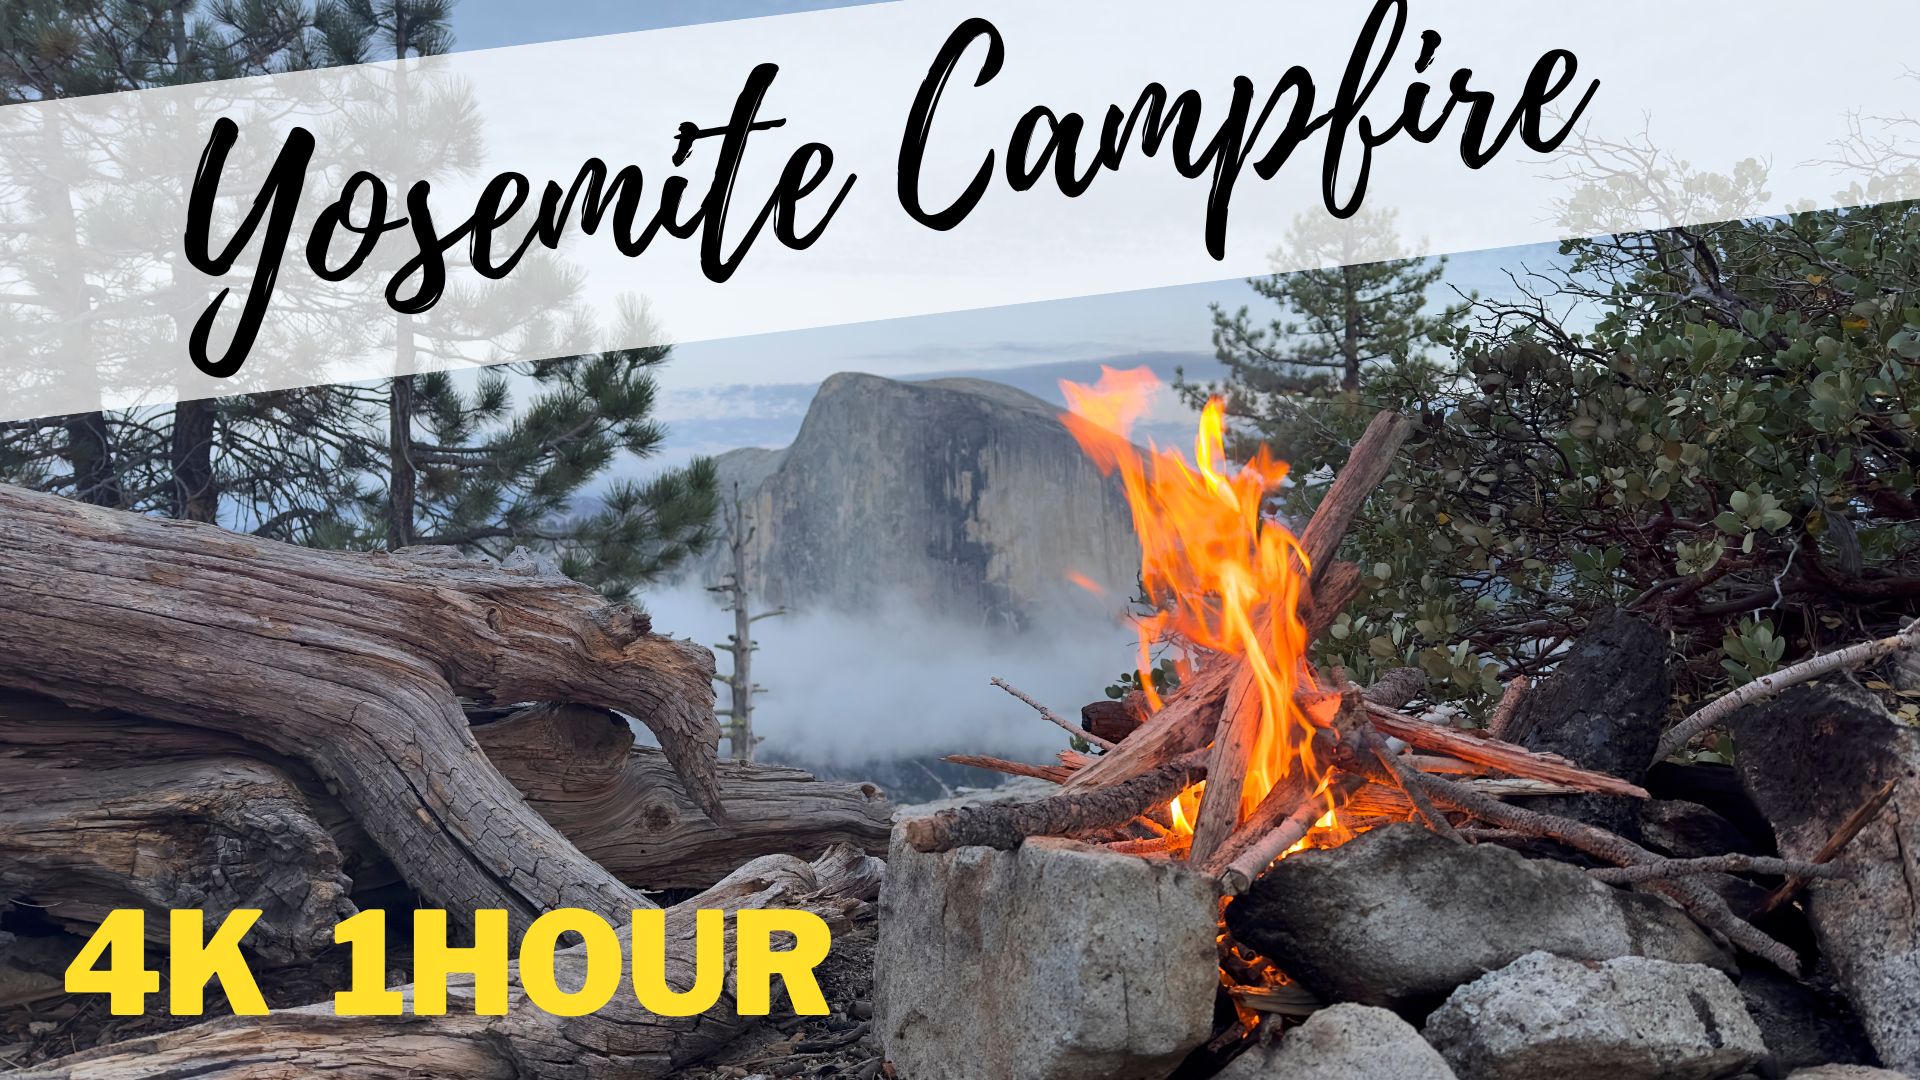 photo of yosemite campfire by tony farley